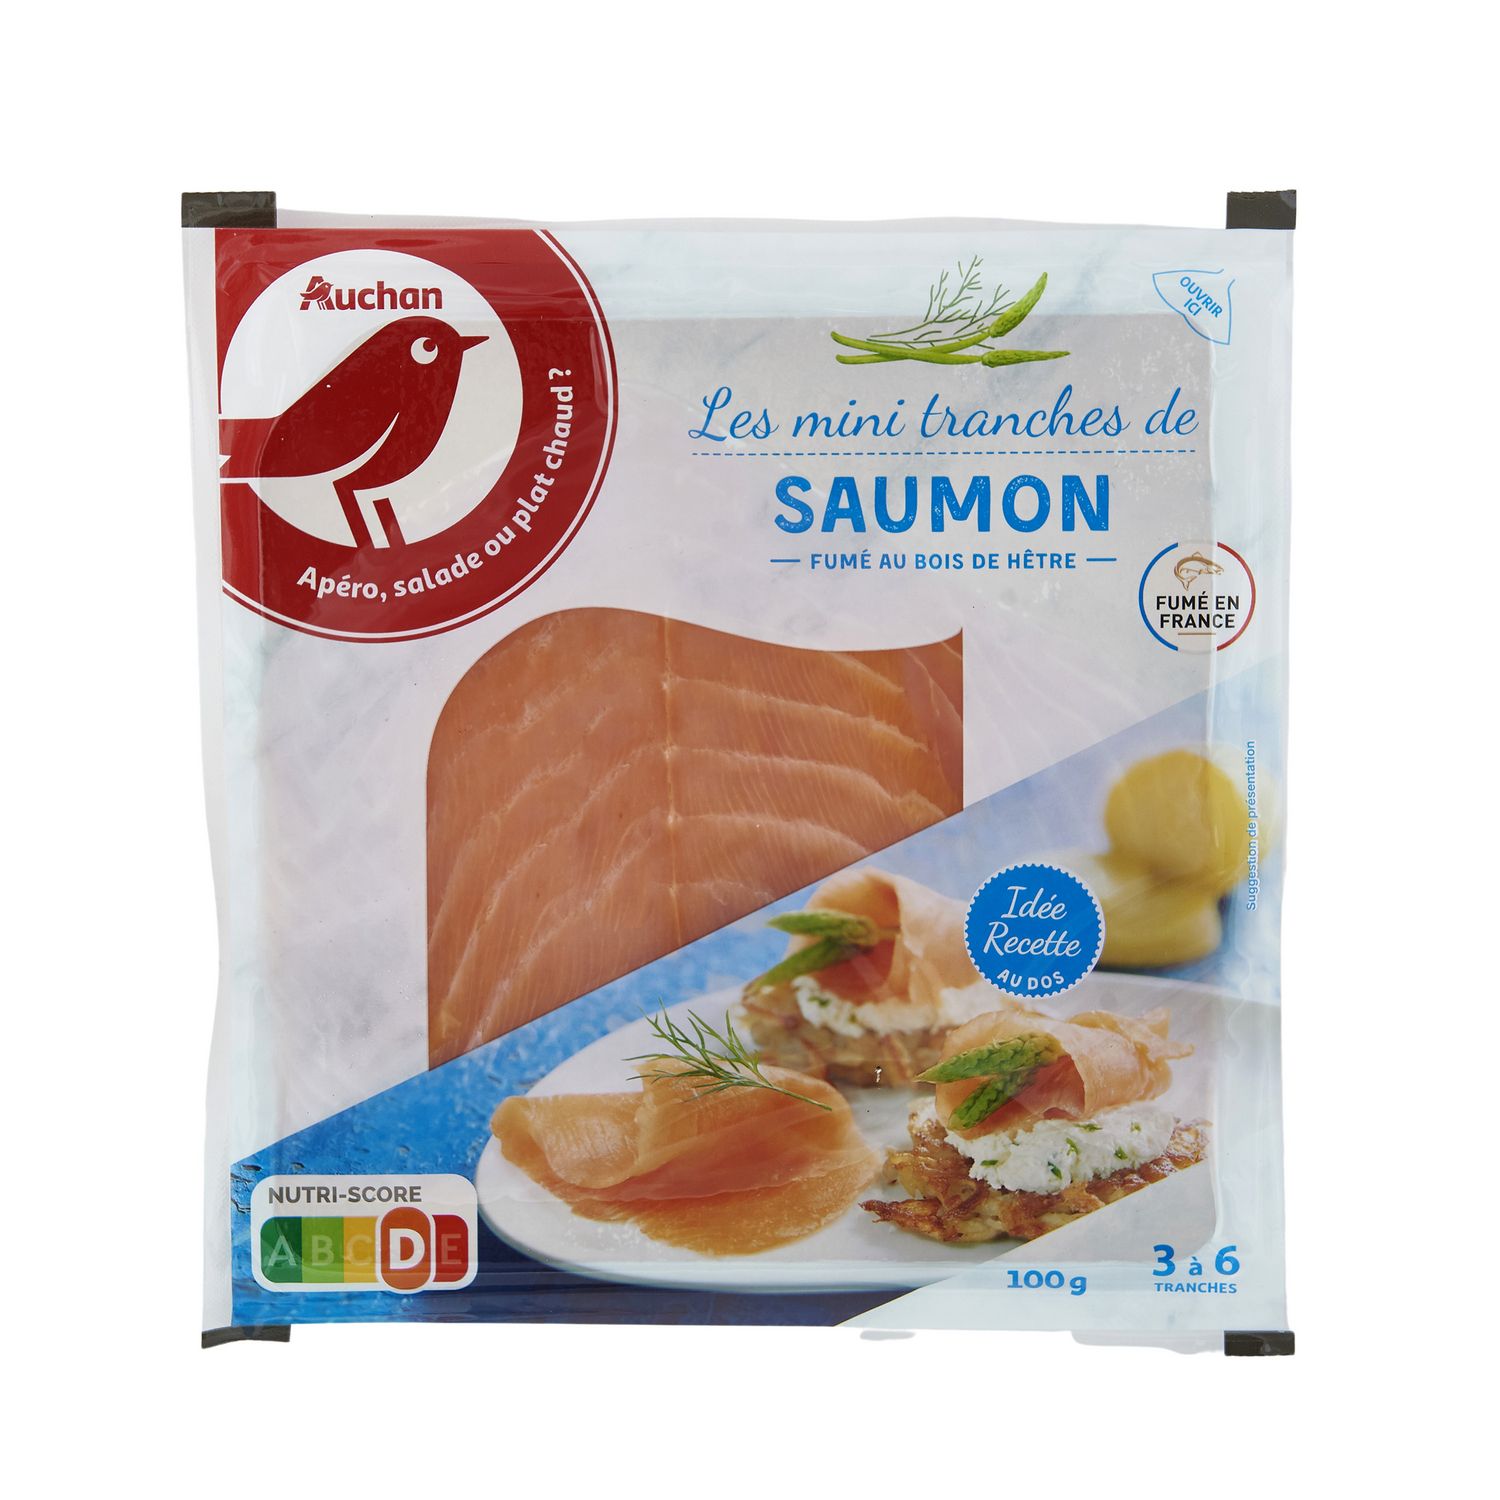 Saumon de France fumé - 4 tranches - 180 g